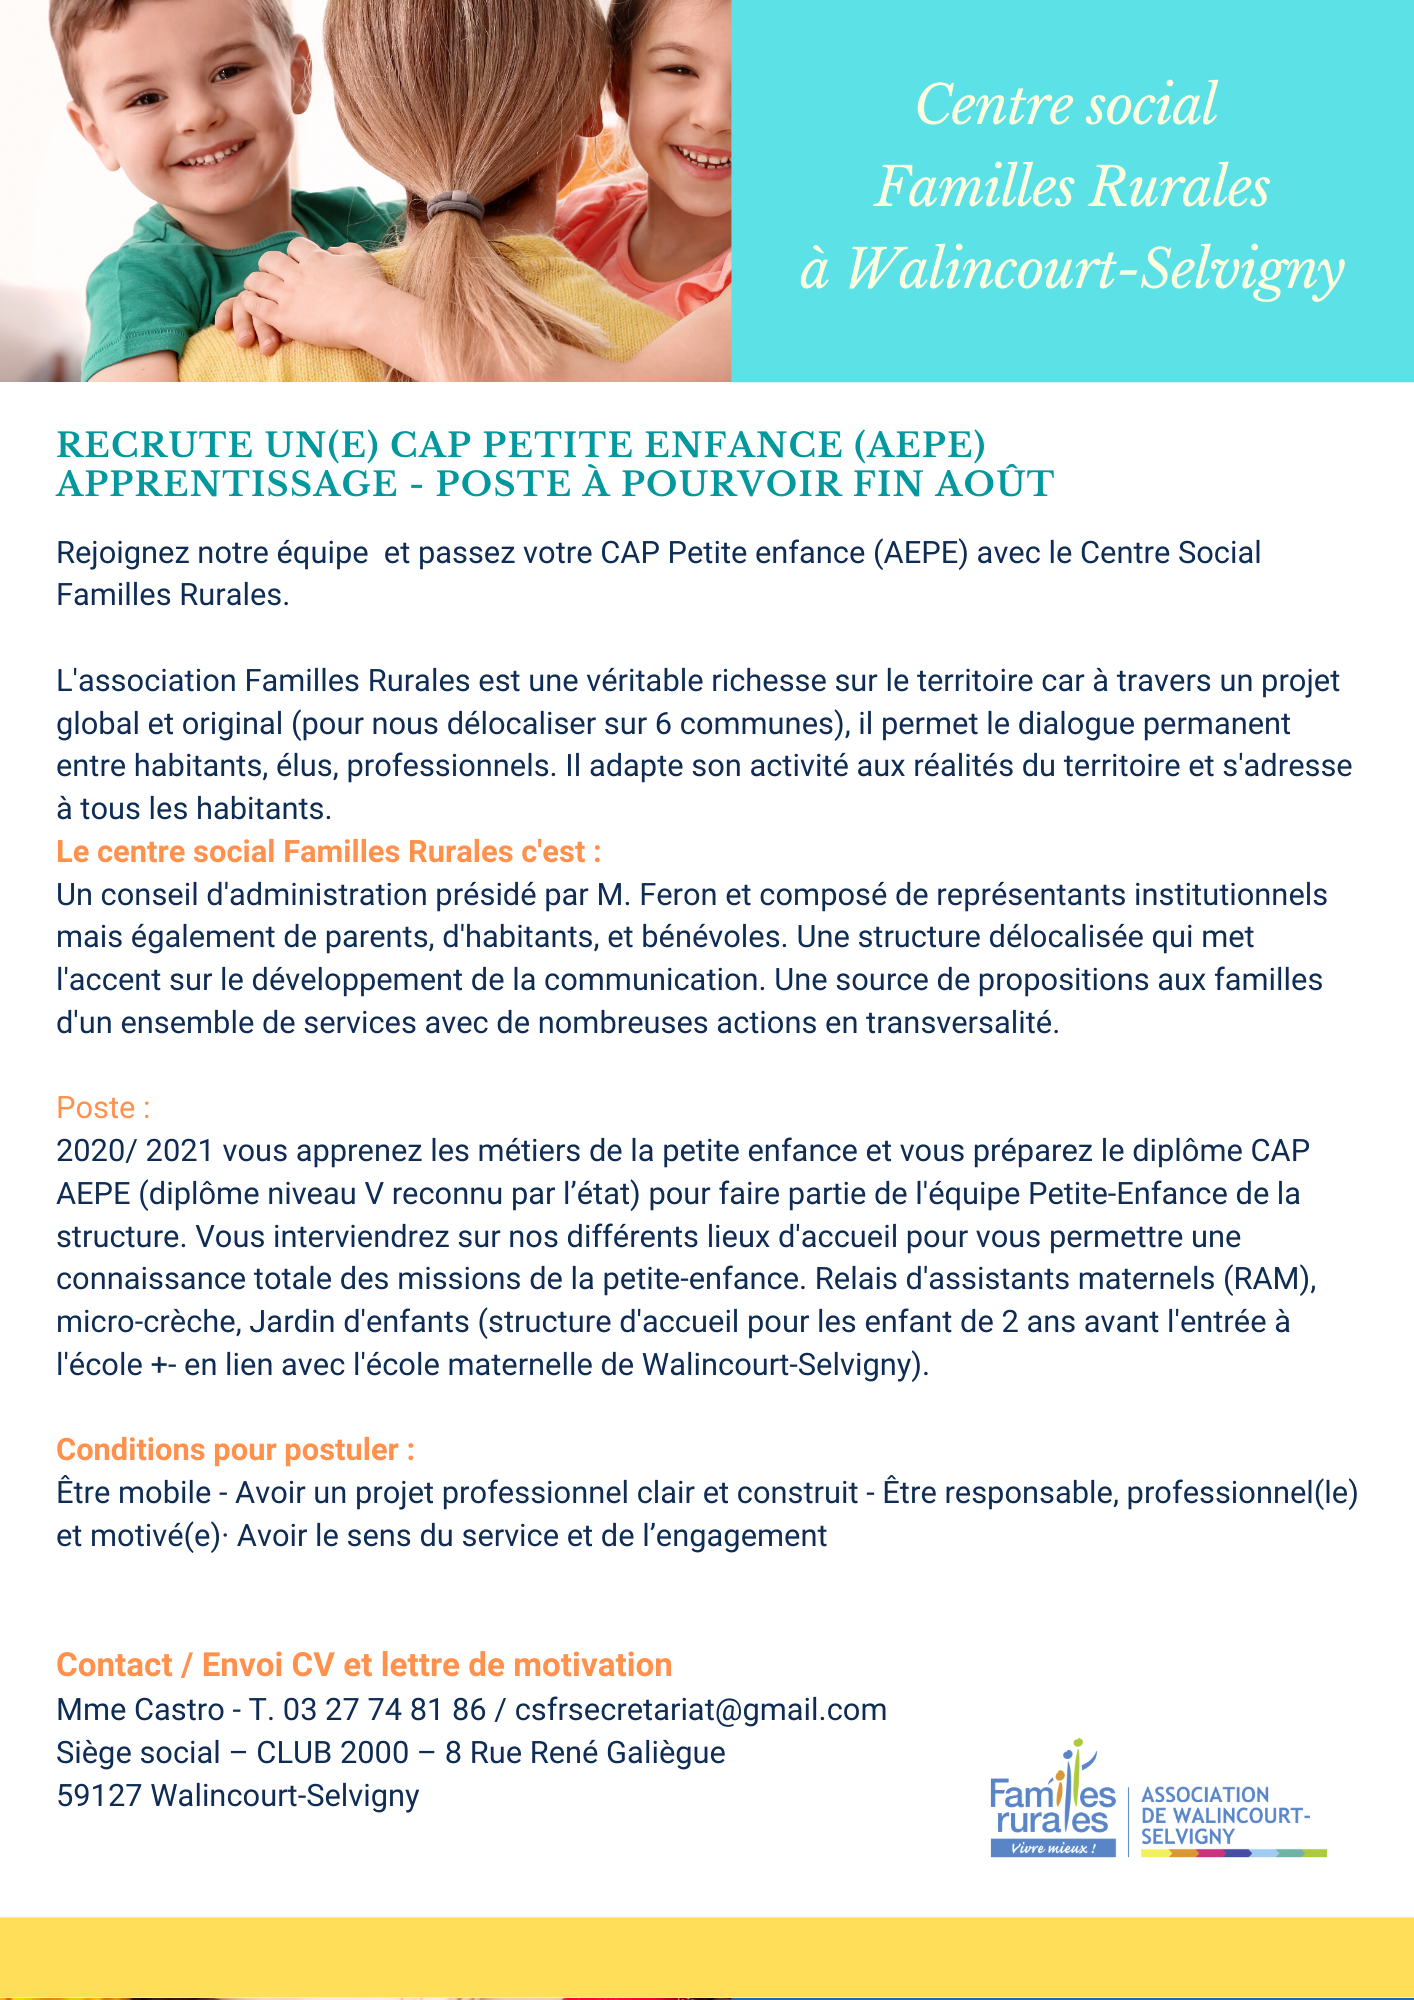 Centre social Familles Rurales à Walincourt-Selvigny recrute un(e) CAP Petite enfance (AEPE)